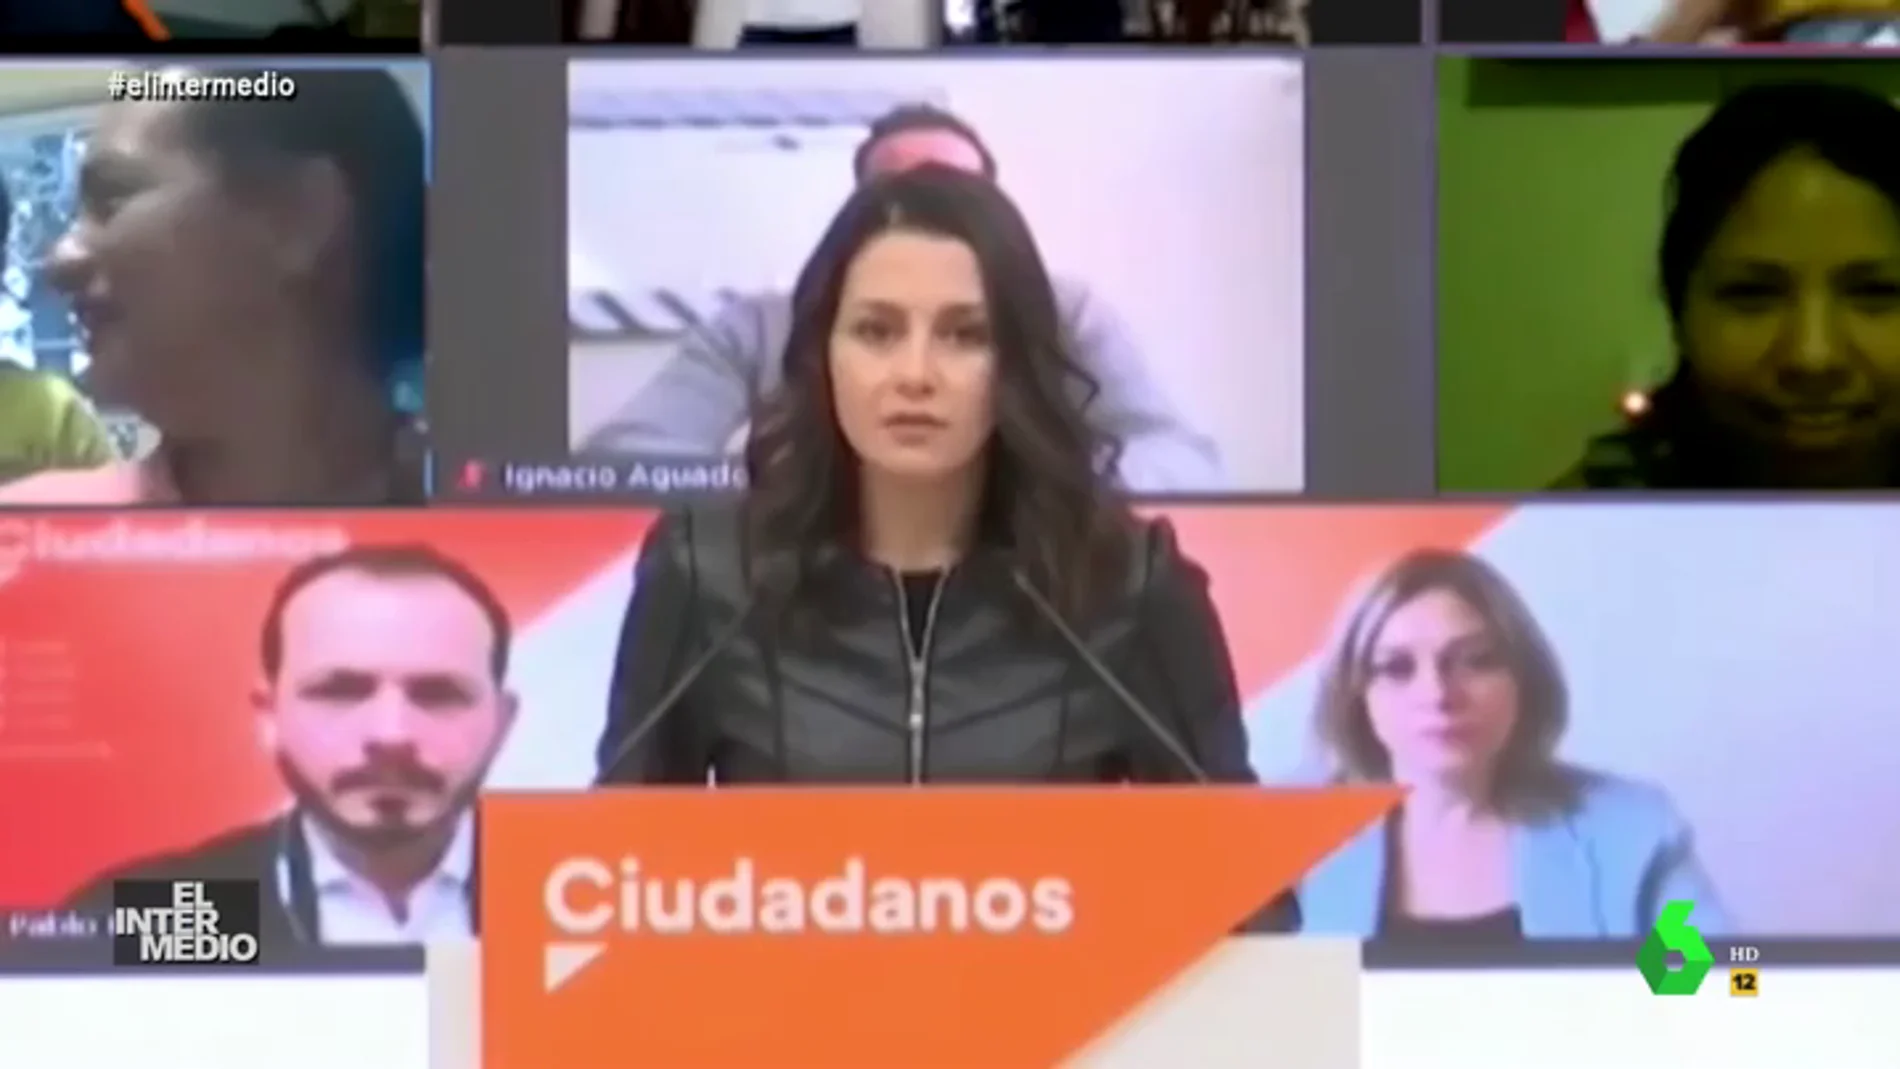 Vídeo manipulado - El boicot a Inés Arrimadas cuando defiende los valores de Ciudadanos ante la prensa